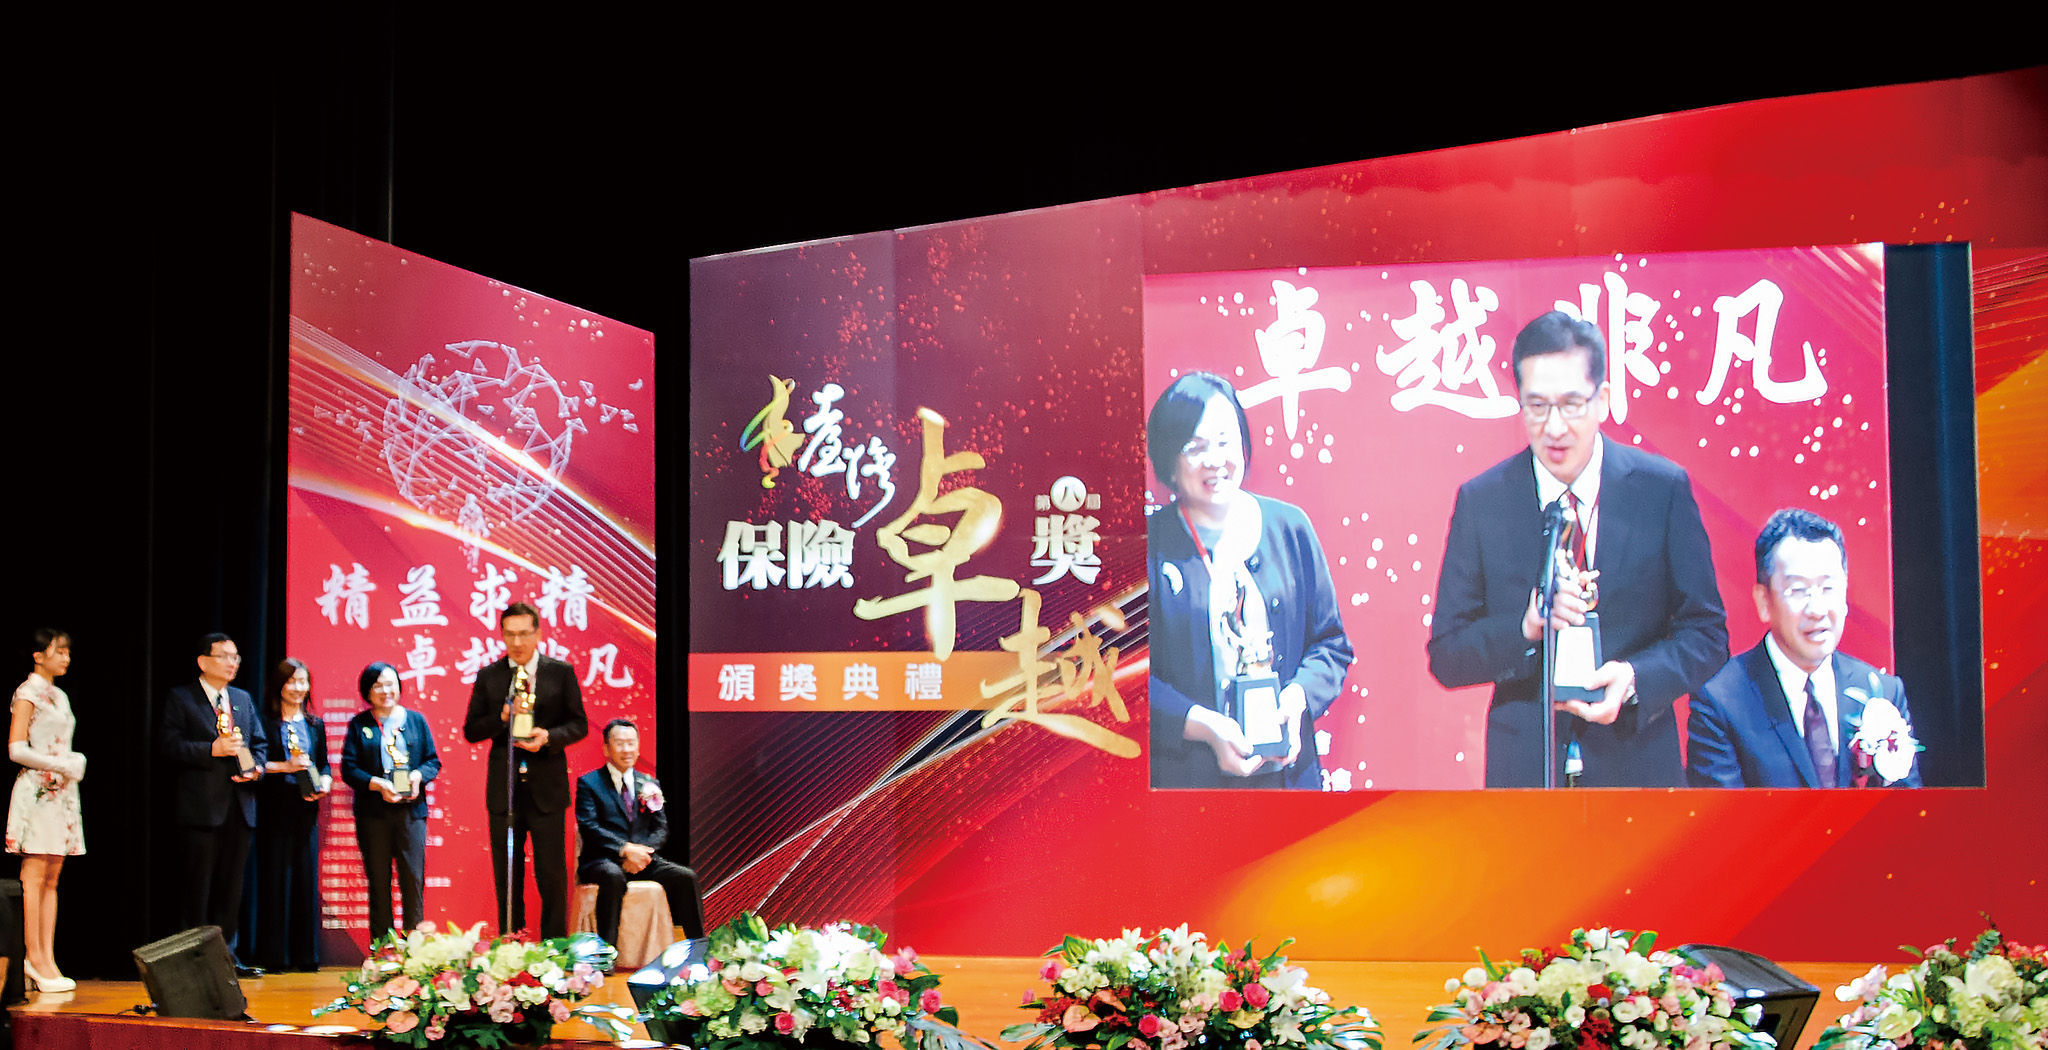 陳慶鴻總經理發表公益關懷卓越獎金質榮耀獲獎感言。